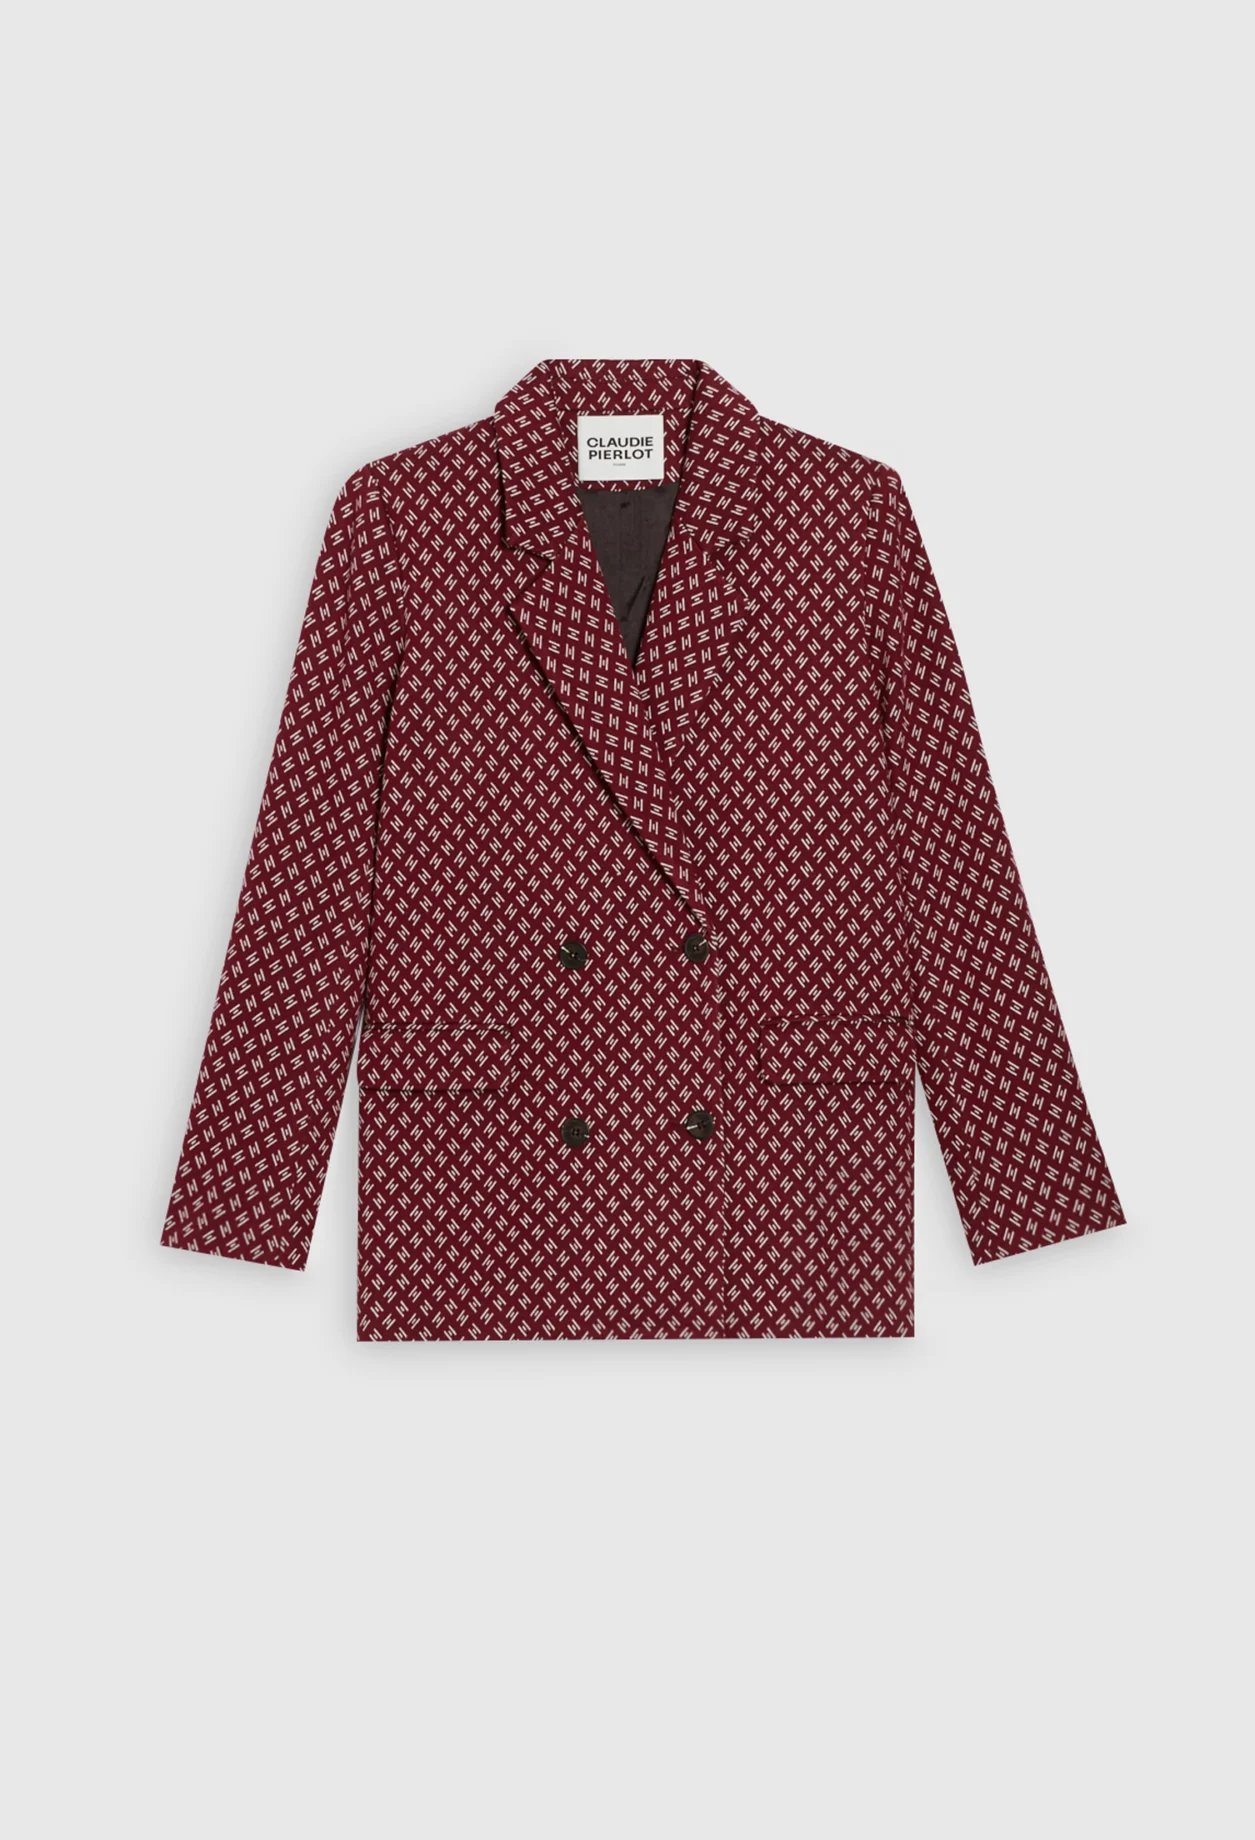 Claudie Pierlot – Veste bicolore de blazer imprimé à <del>295 €</del> 147,50 € chez Claudie Pierlot